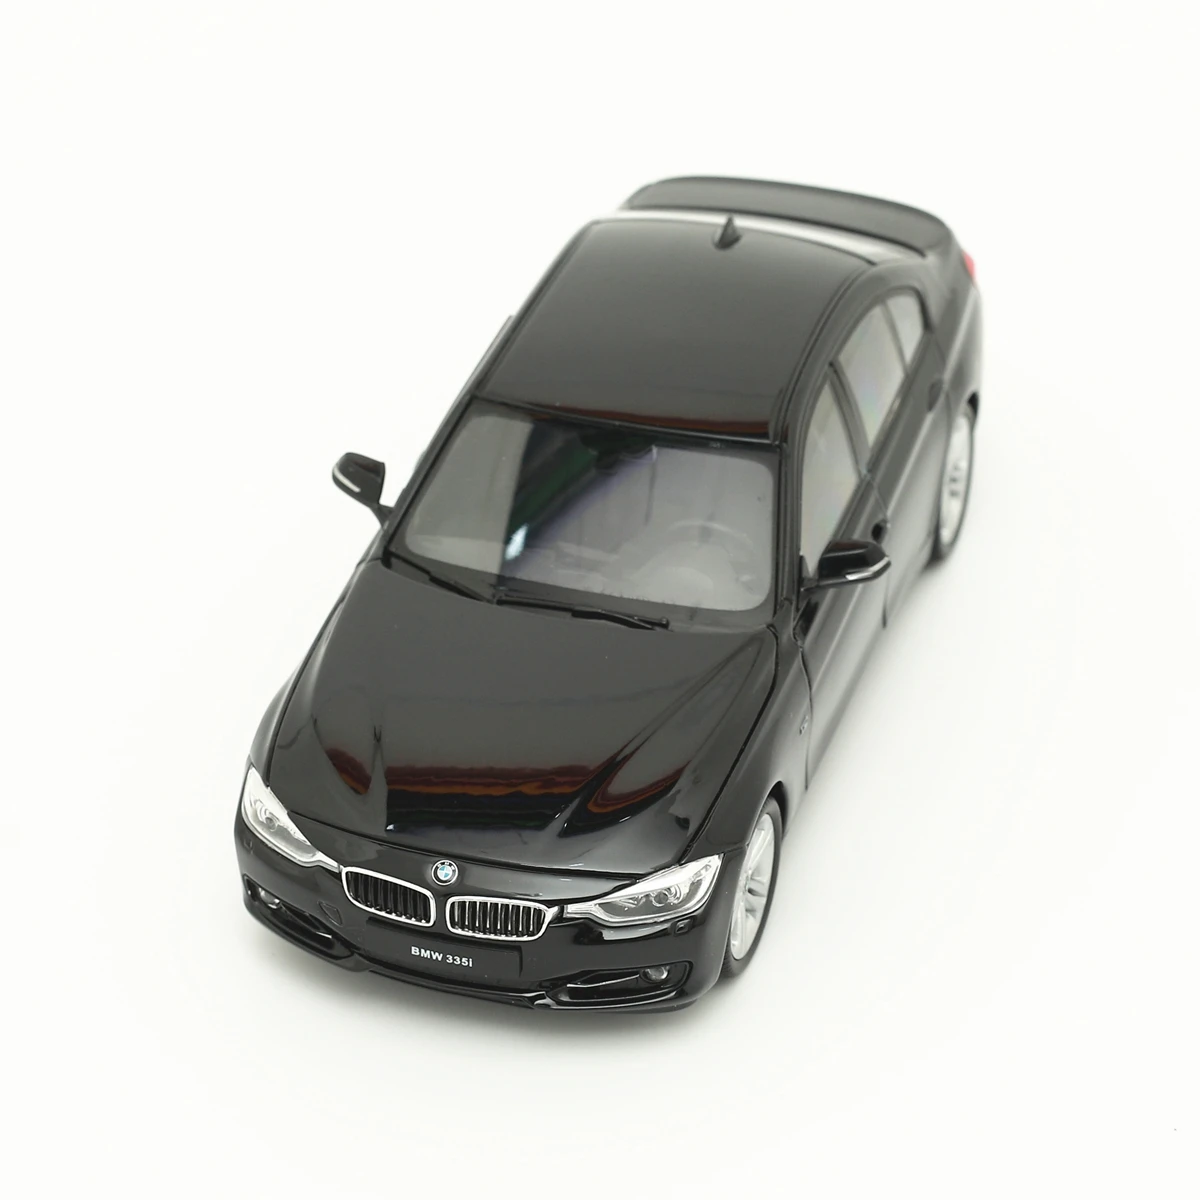 

WELLY 1:24 BMW 335i металлический роскошный автомобиль литый под давлением модель автомобиля коллекция игрушек Рождественский подарок